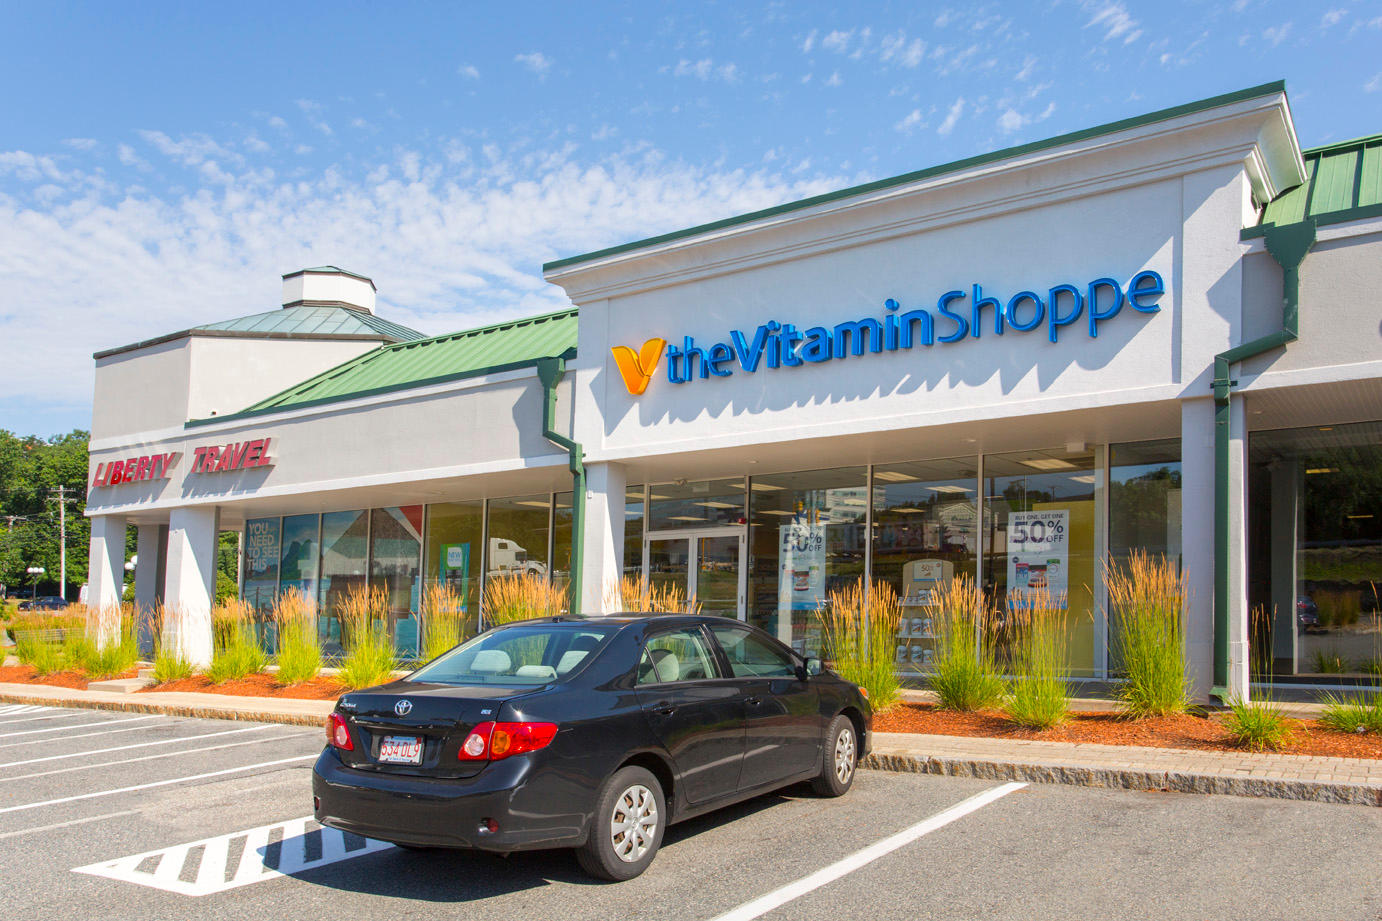 The Vitamin Shoppe at Burlington Square I, II & III Shopping Center